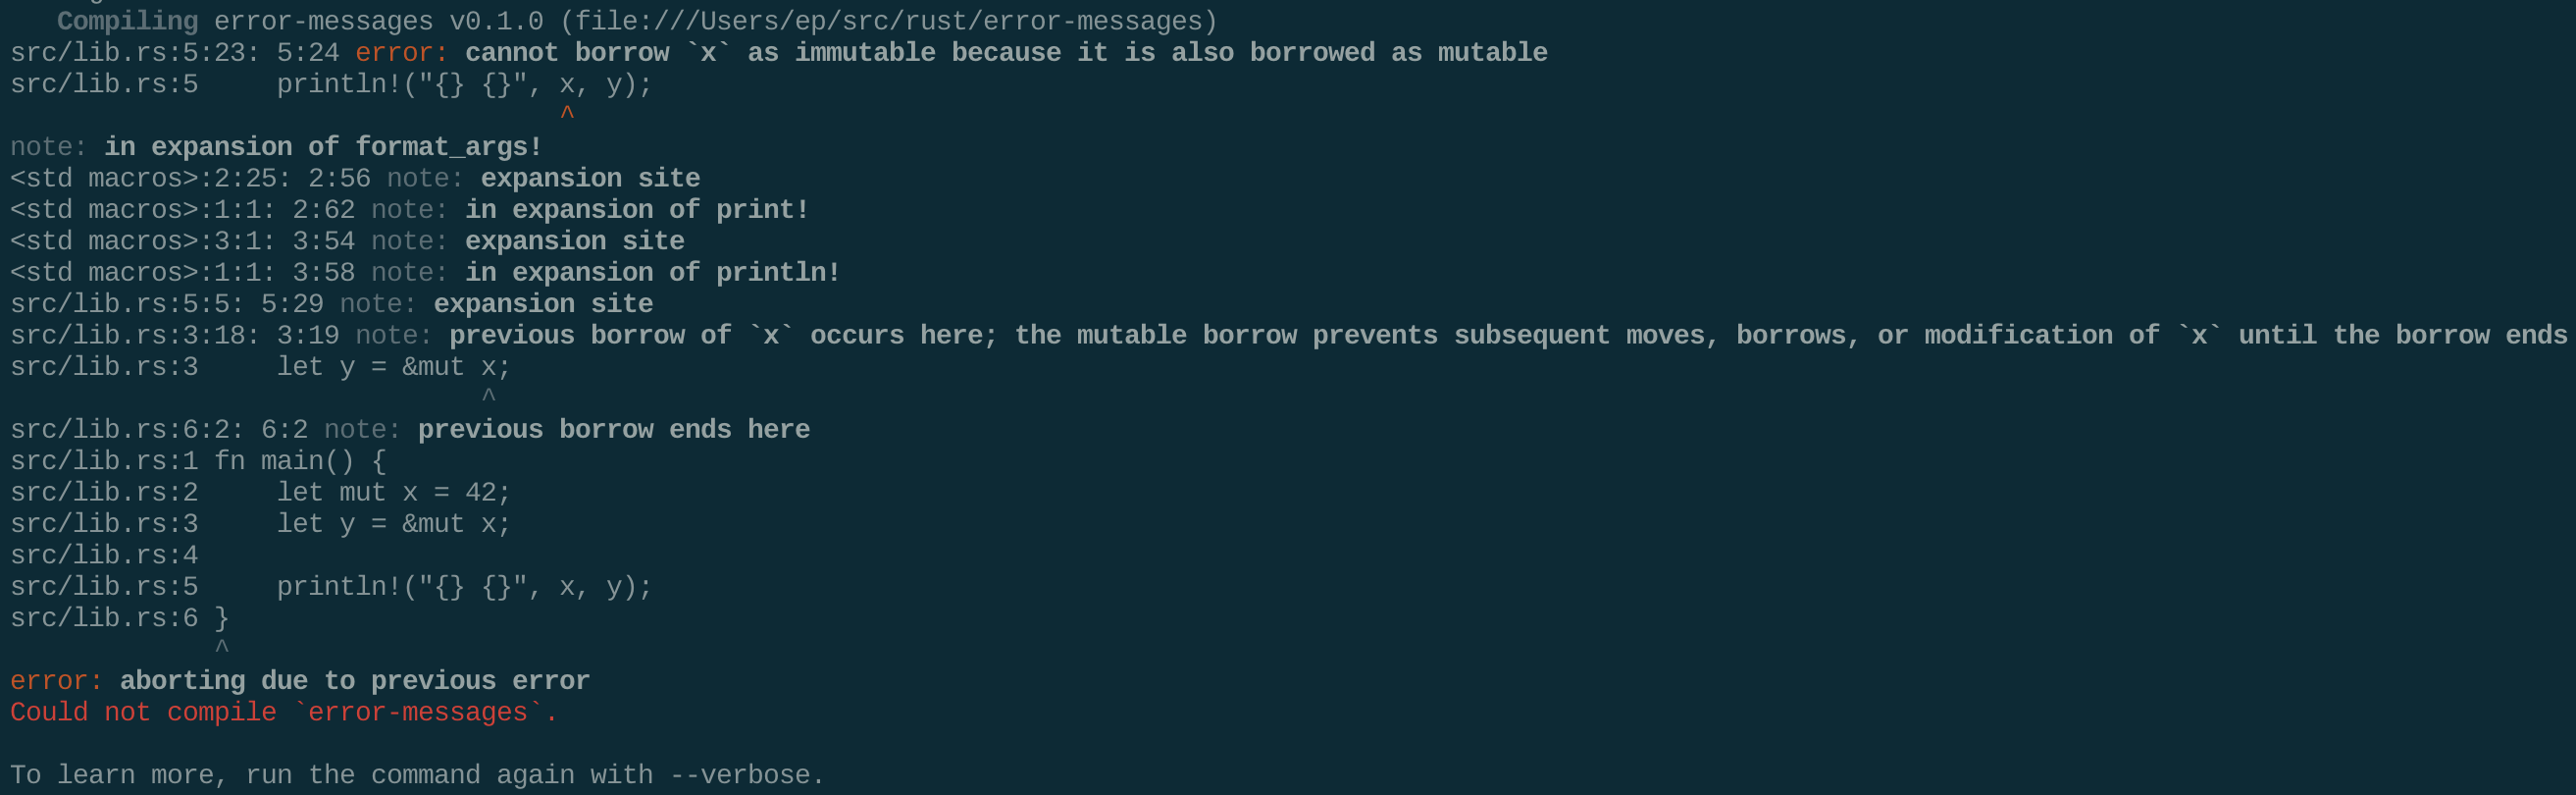 A terminal screenshot of the 1.2.0 error message.